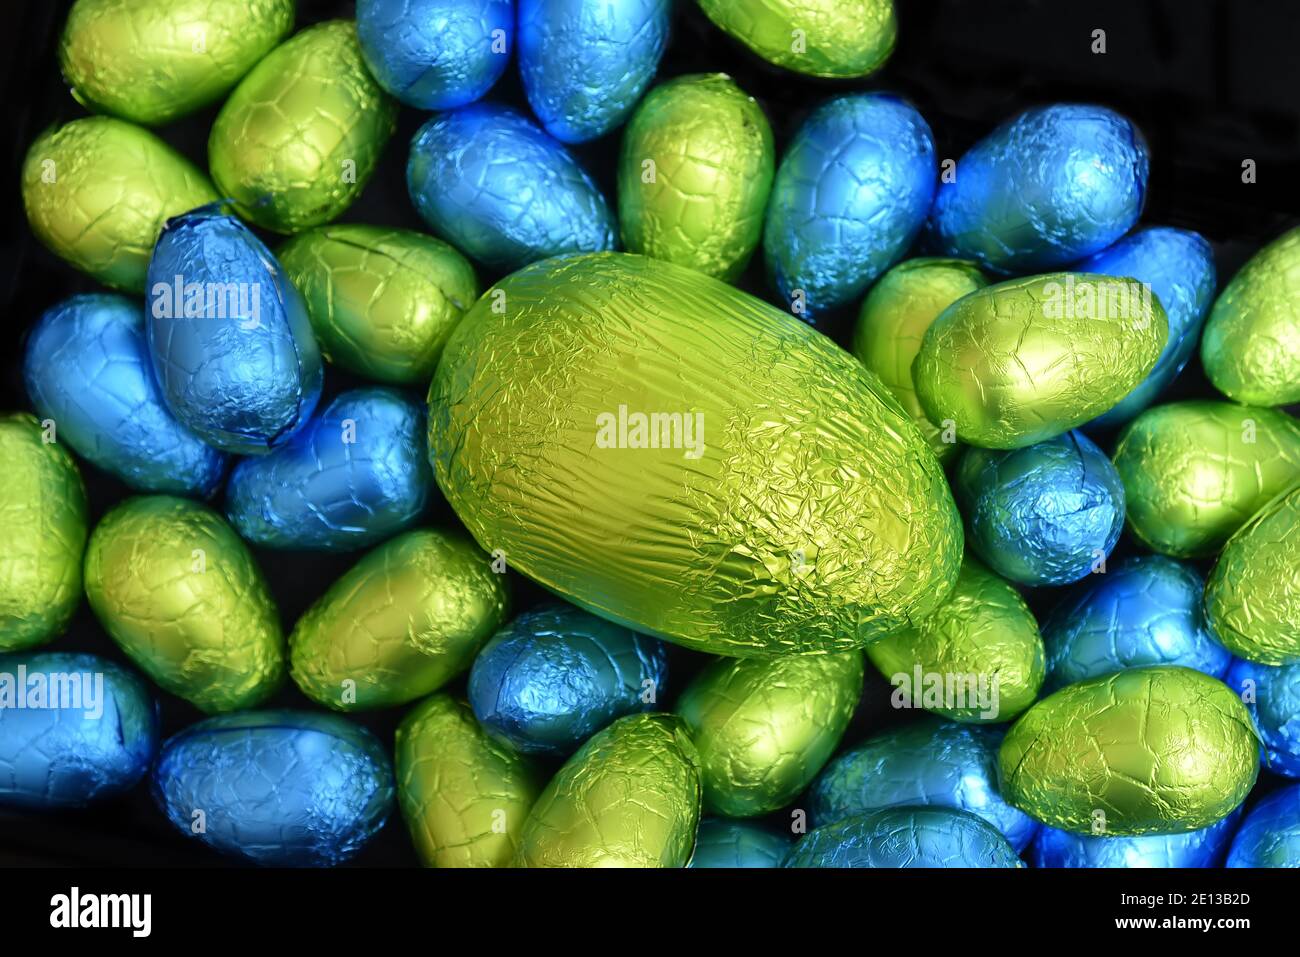 Haufen Gruppe von bunten und verschiedenen Größen von bunten Folie verpackt Schokolade ostereier in blau, gelb und lindgrün mit einem großen grünen Ei. Stockfoto